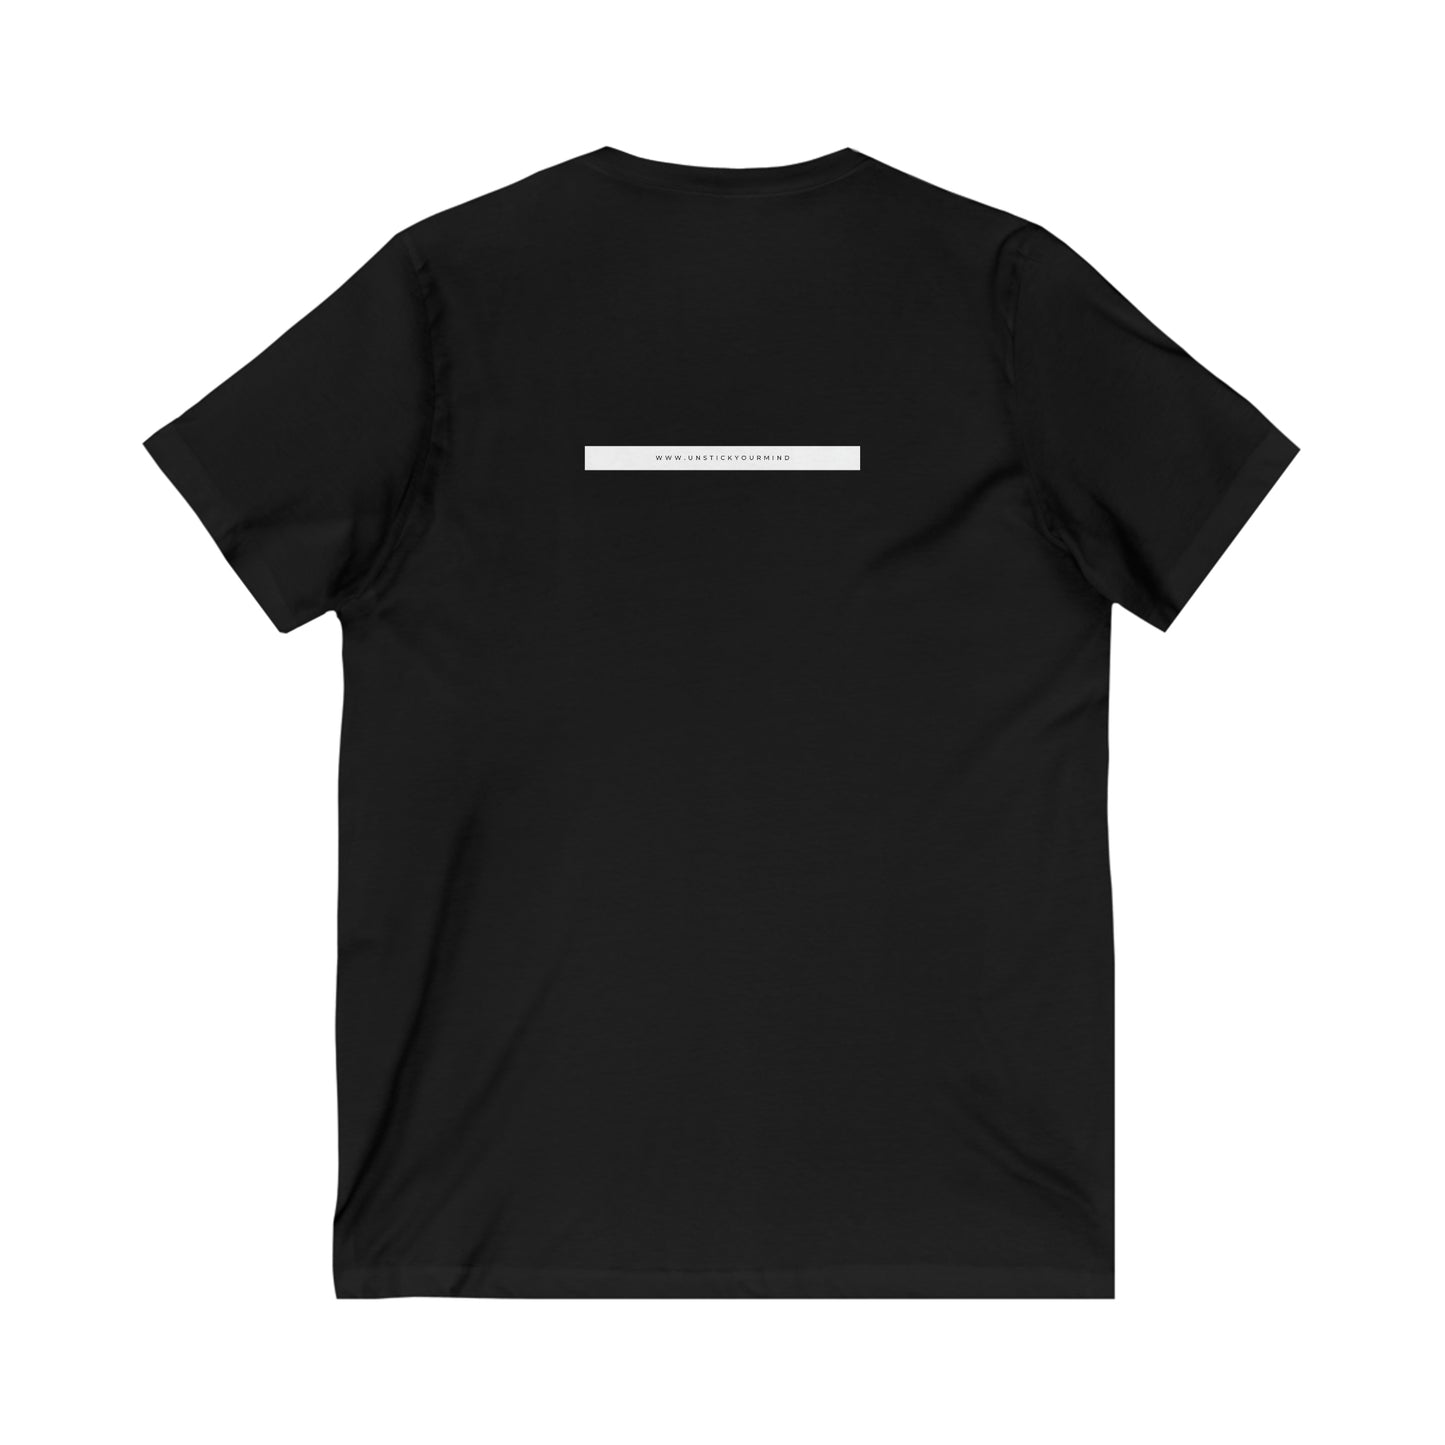 T-Shirt Unisex Short Sleeve V-Neck Tee (Raise Your Roar)